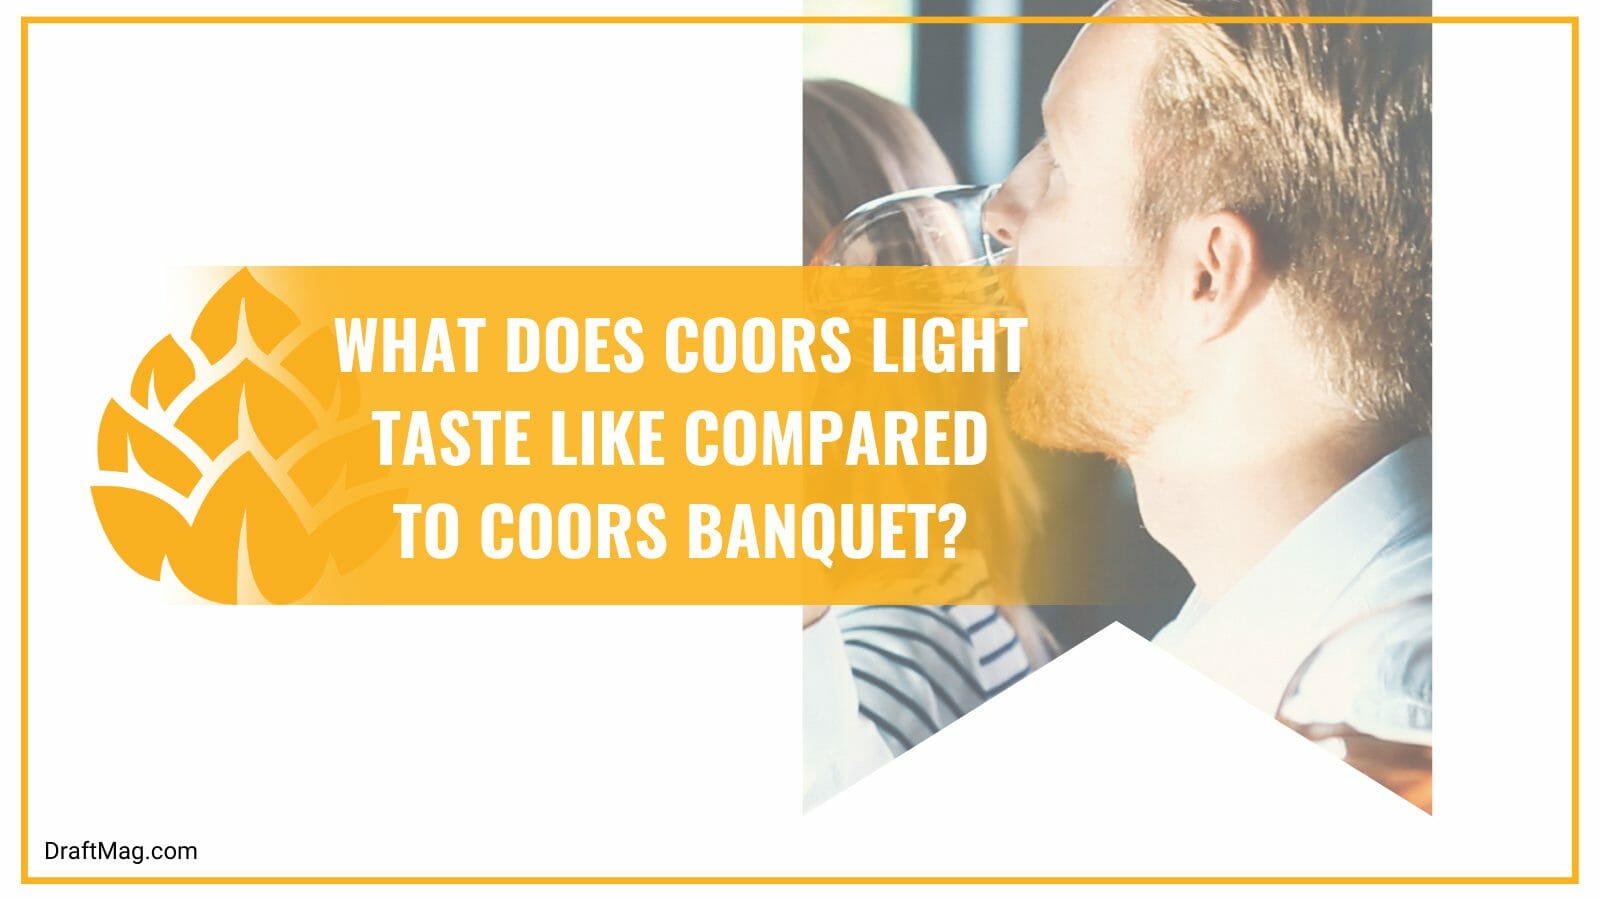 Coors light vs coors banquet